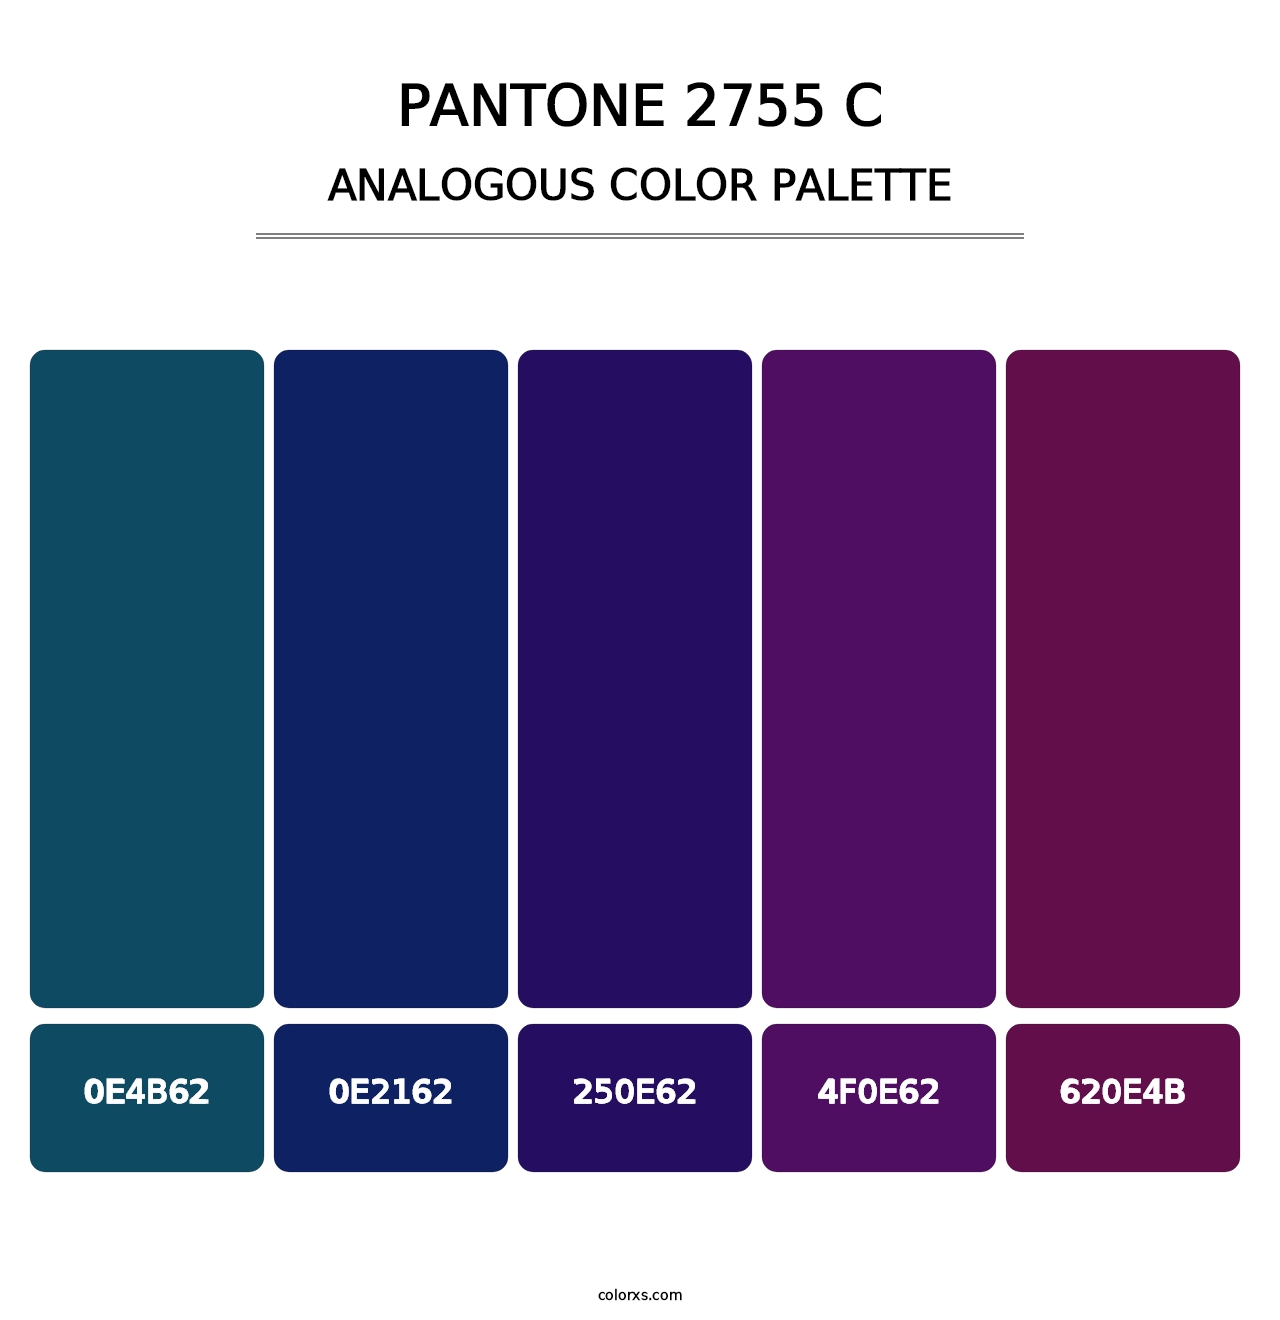 PANTONE 2755 C - Analogous Color Palette